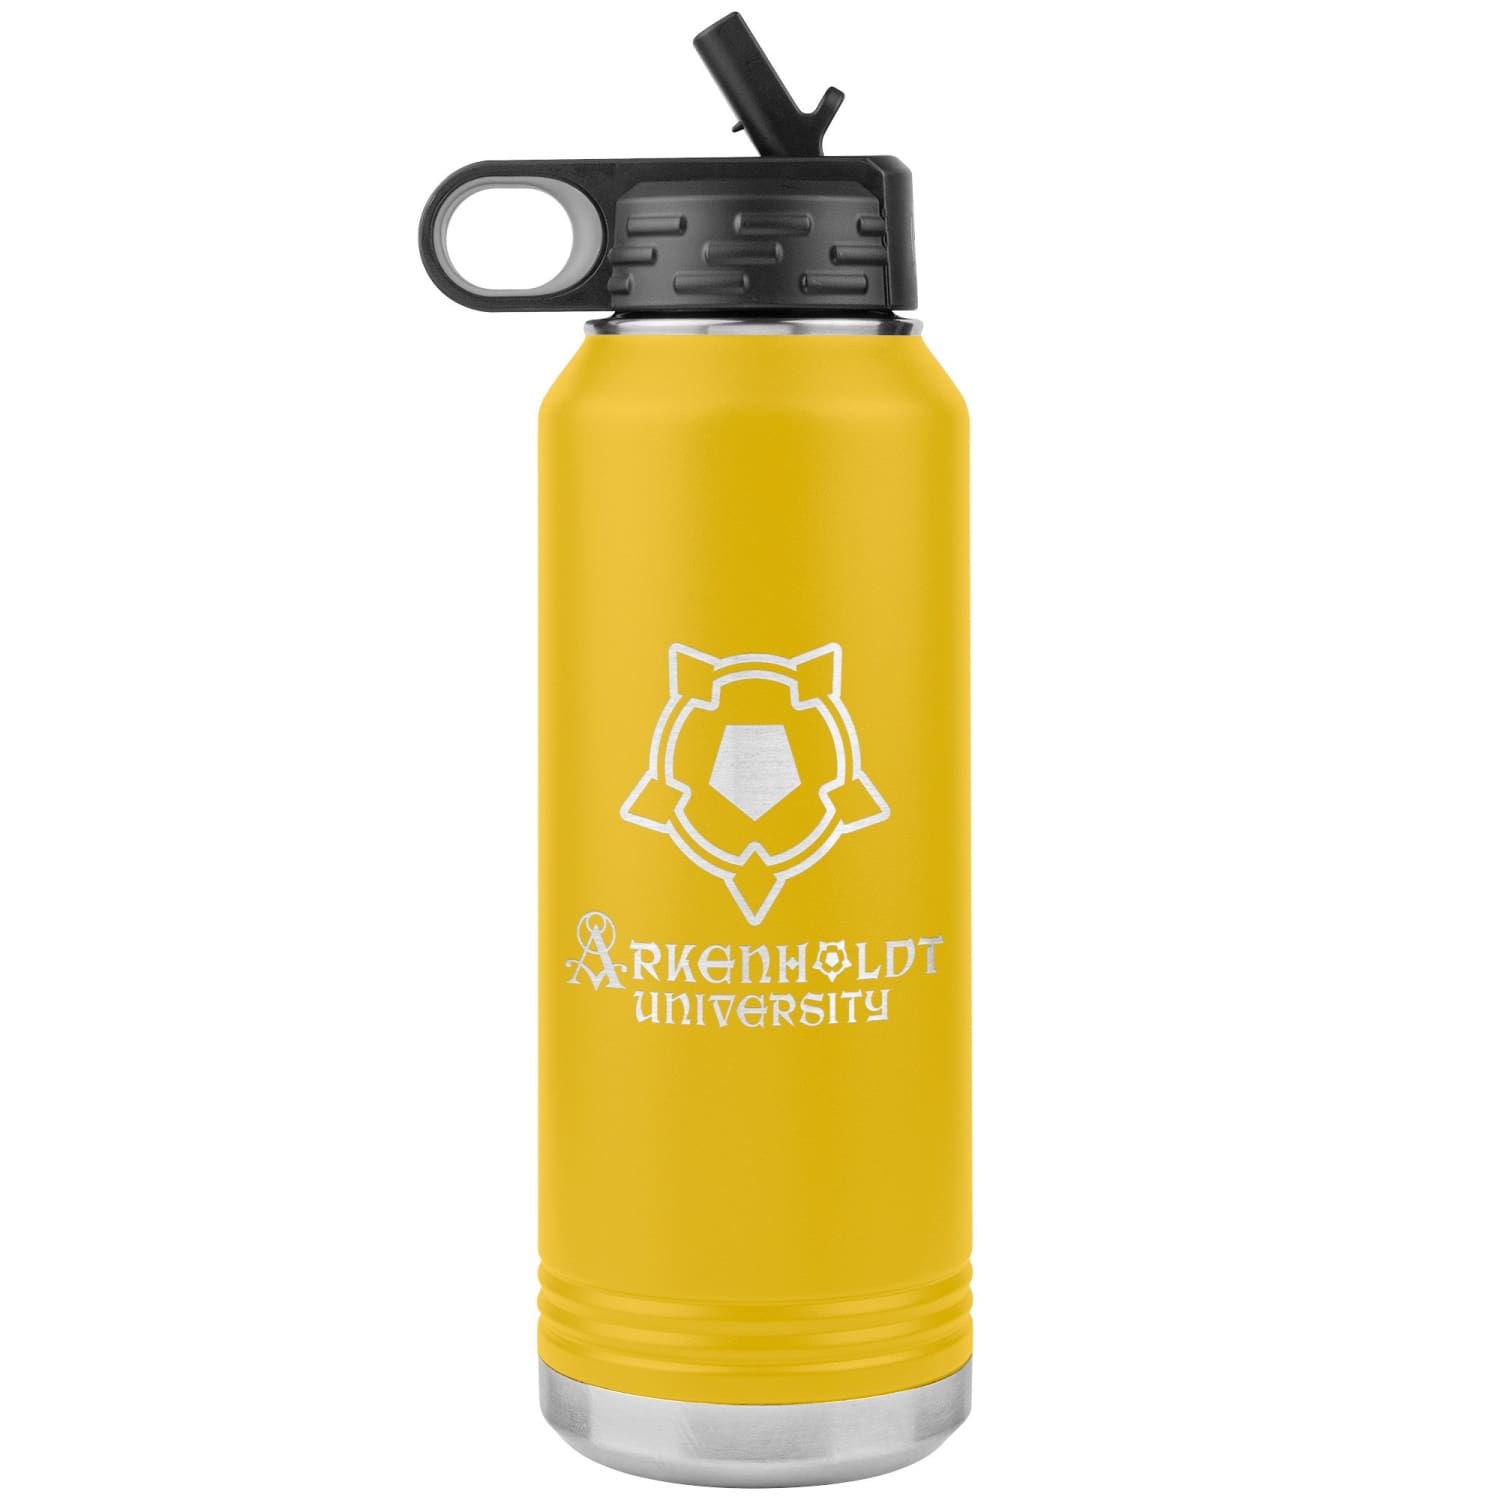 Arkenholdt Arkenstar 32oz Water Bottle Tumbler - Yellow - Water Bottle